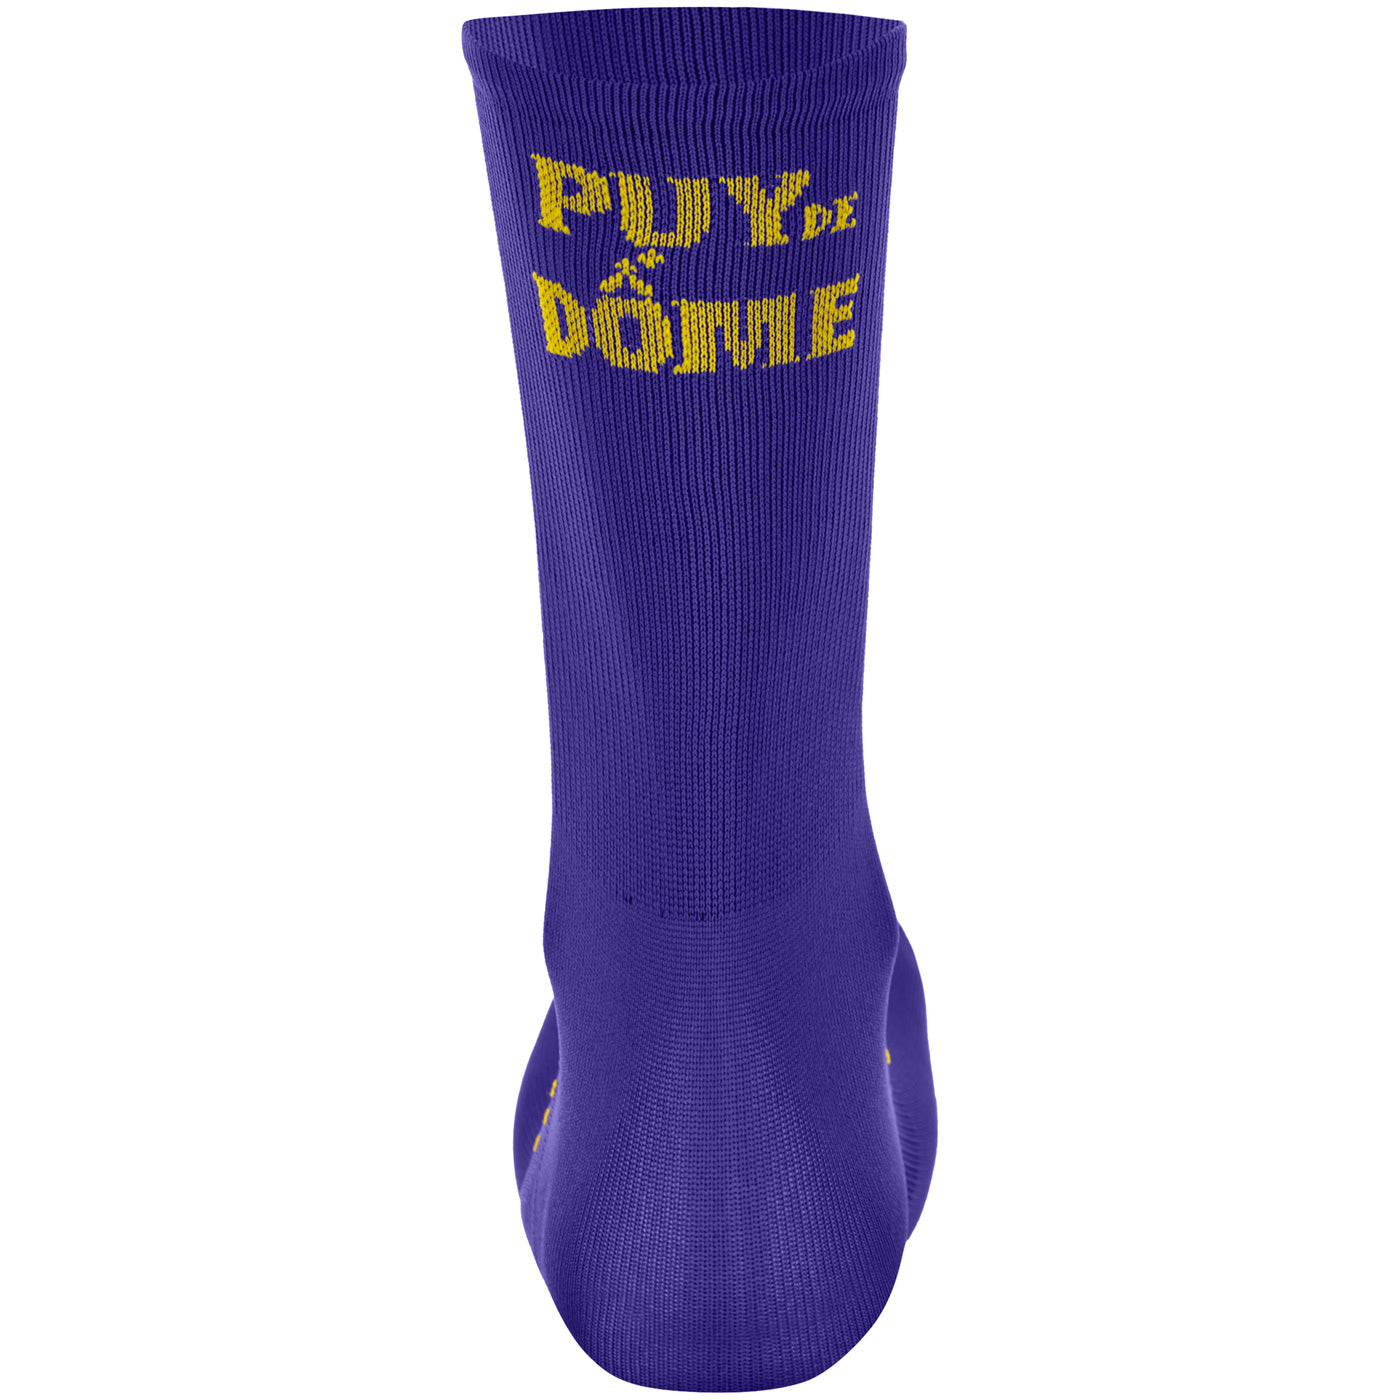 Tour de France socks - Puy De Dome